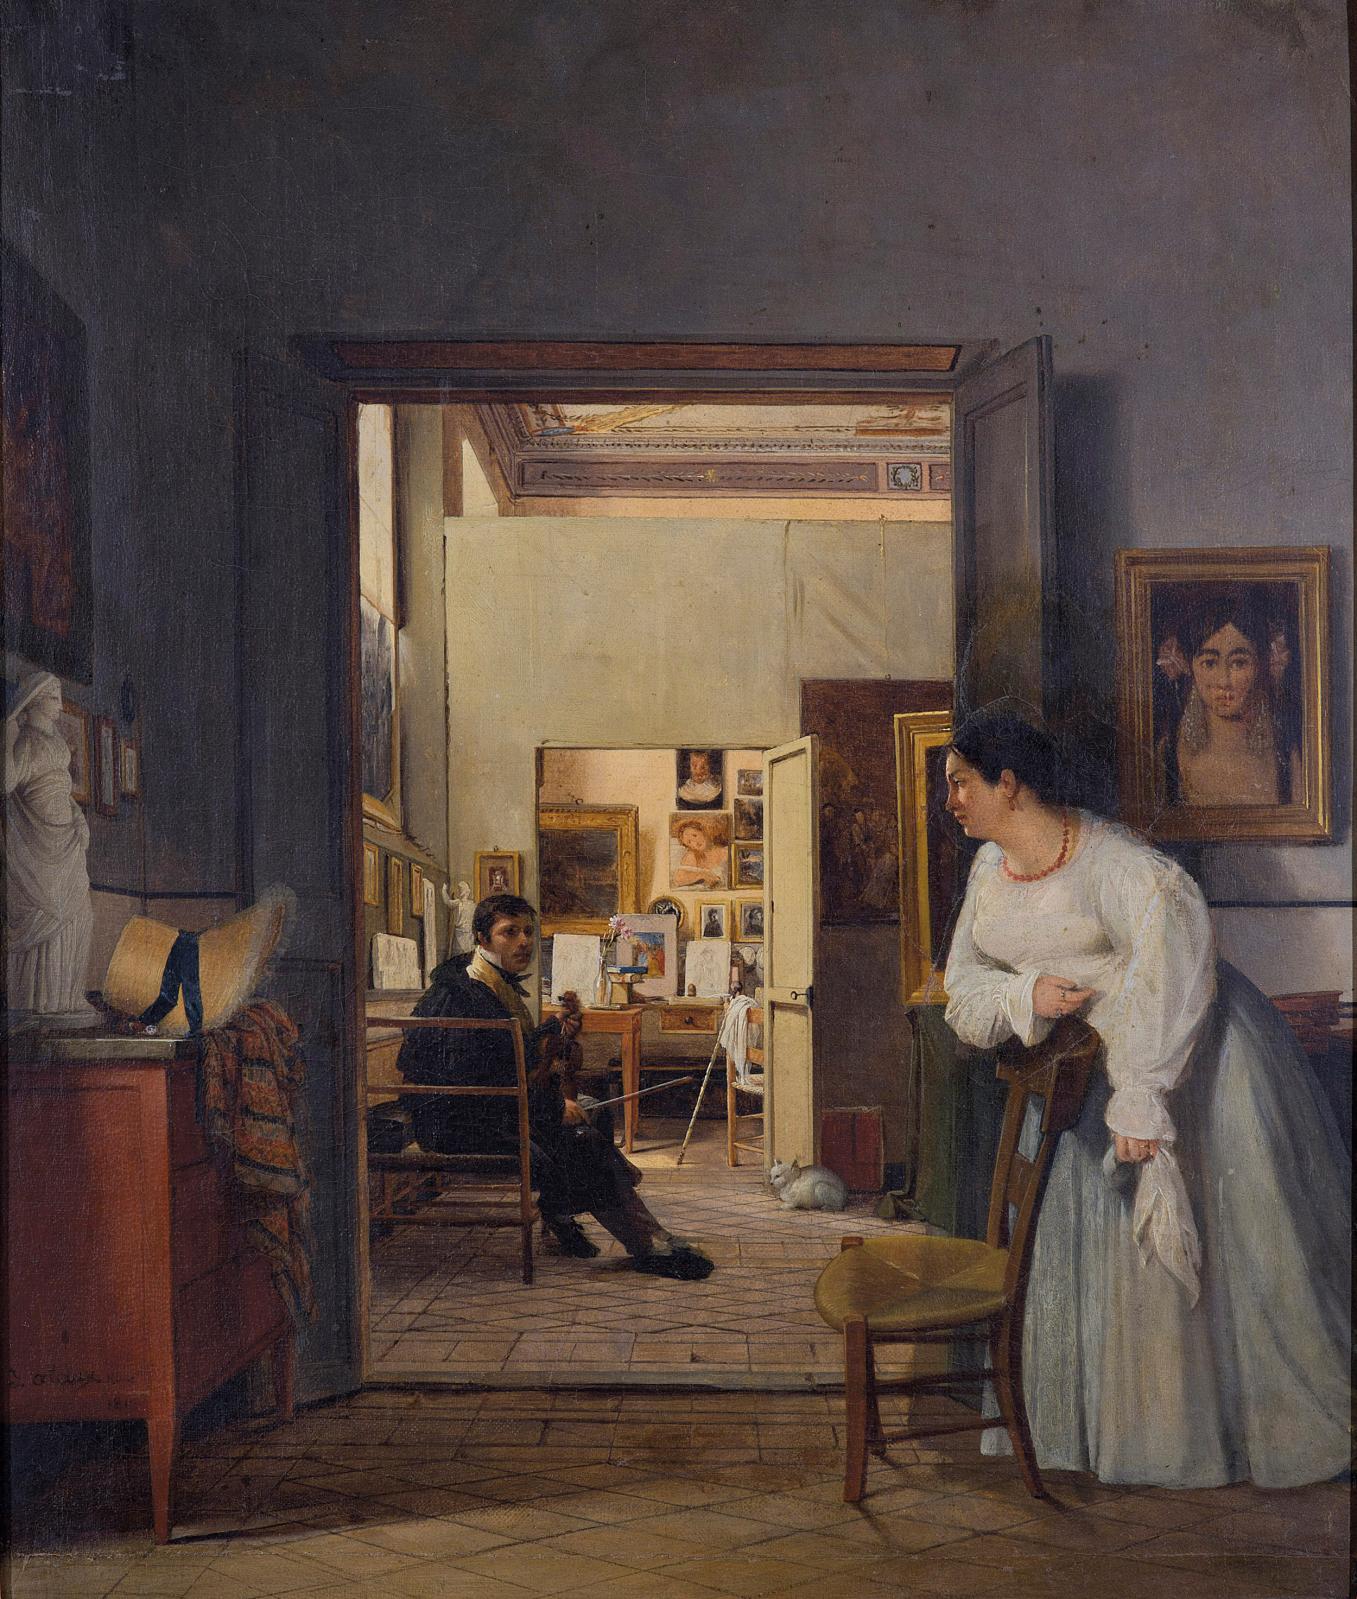 Objets d’artistes au musée Delacroix